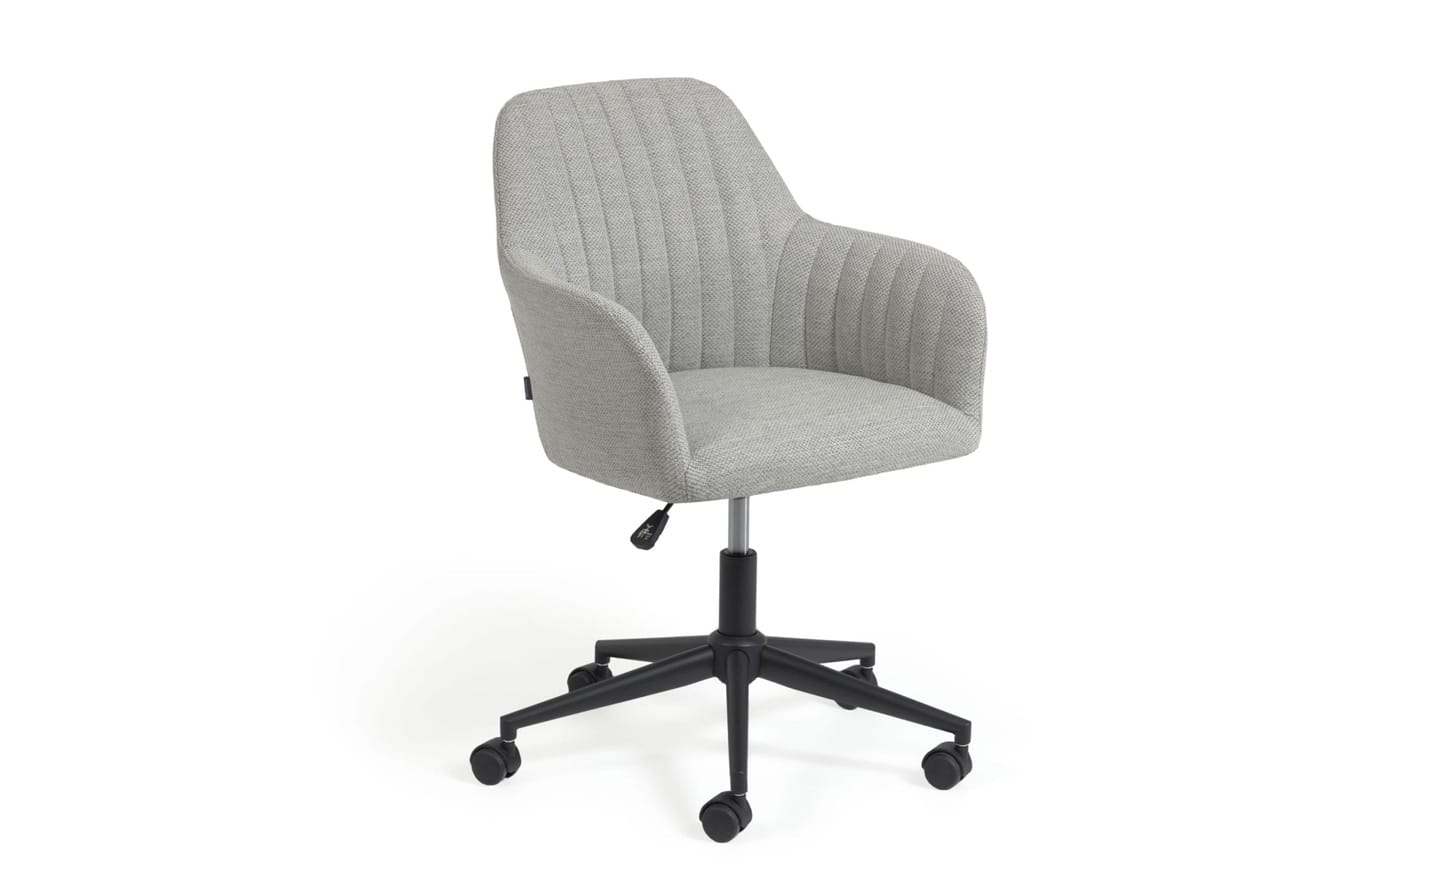 Cadeira de Escritório Madina Cinza Claro - CC2186VD14. Conforto e estilo em uma cadeira giratória com assento acolchoado e ajuste de altura. | Moveistore